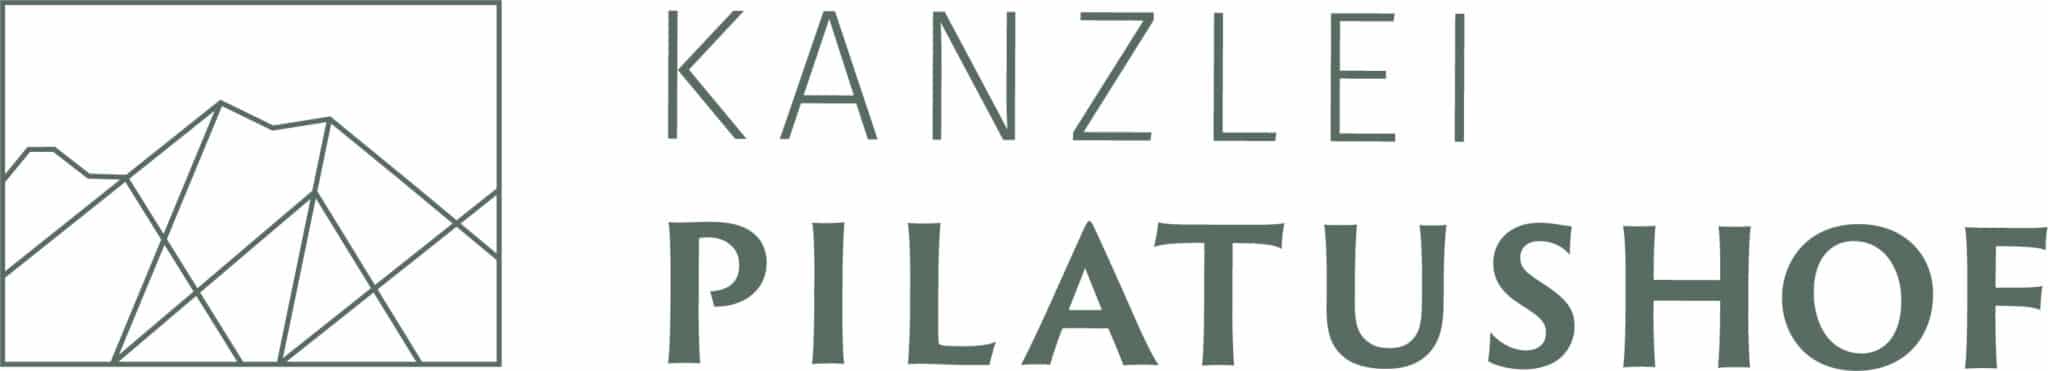 Logo-Kanzlei-Pilatushof-